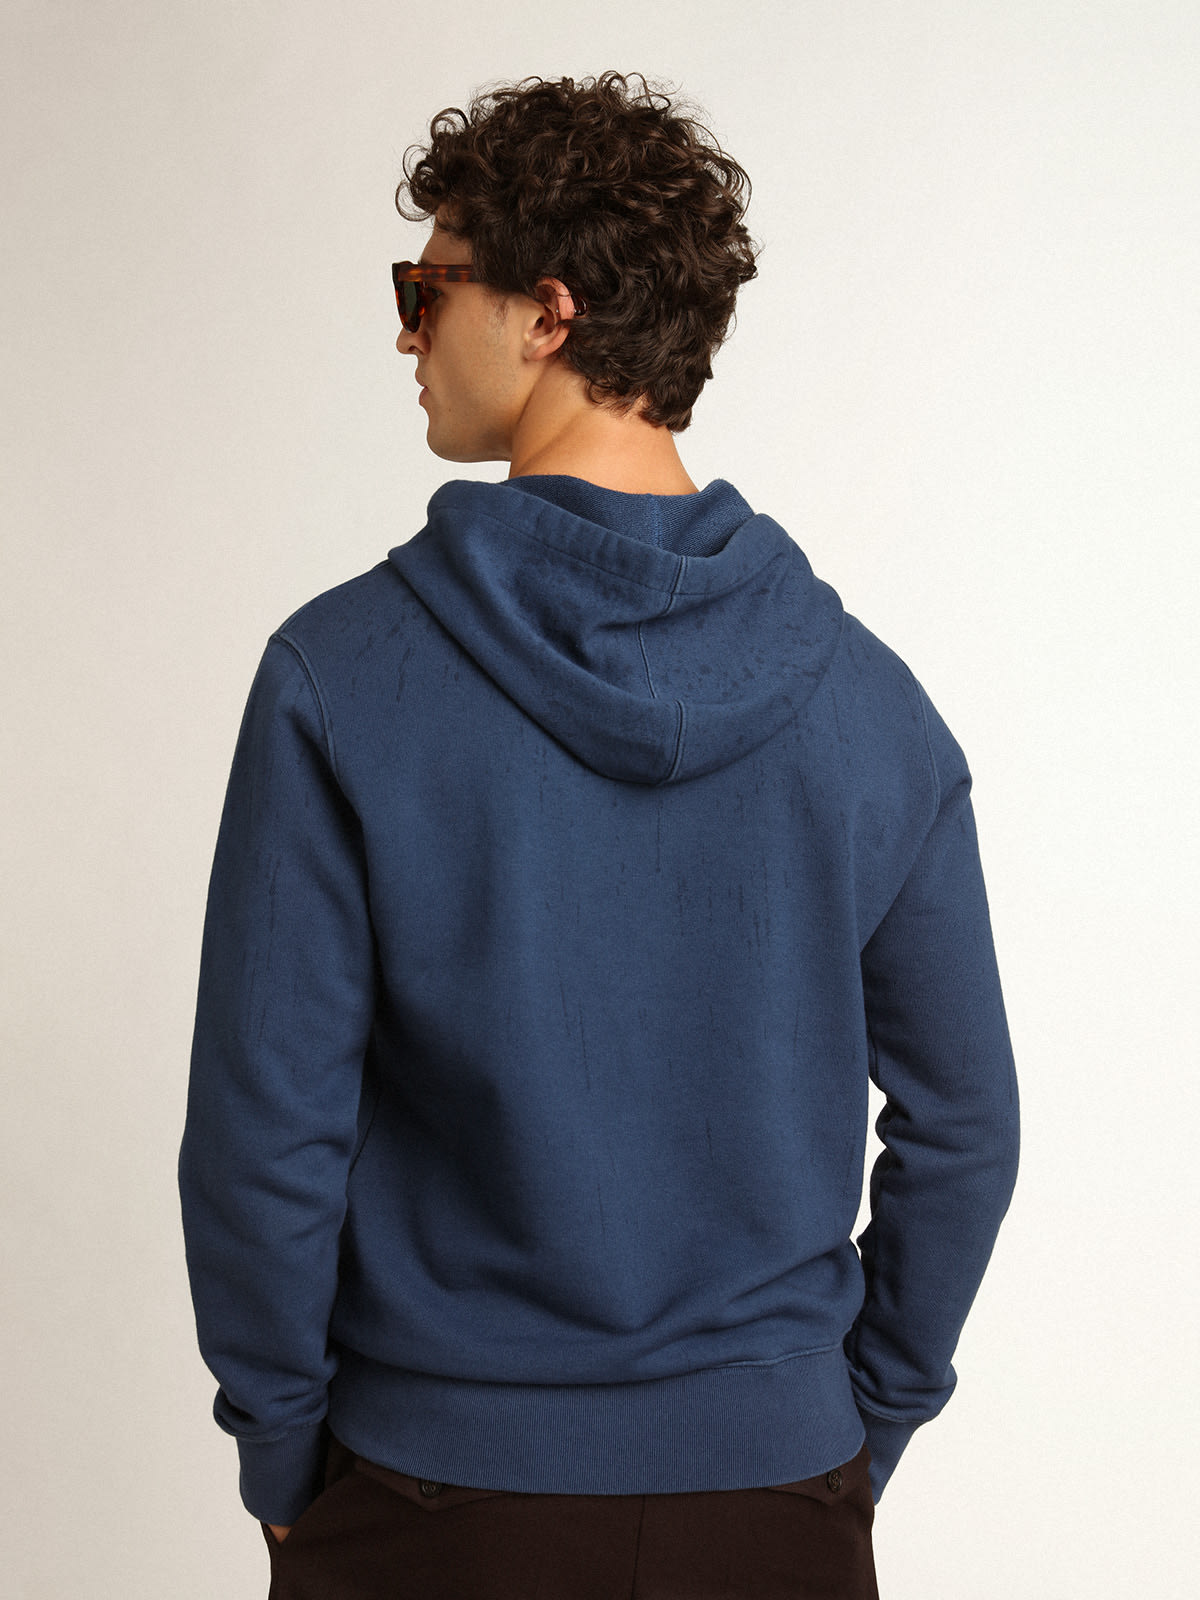 Golden Goose - Men's midshipman blue sweatshirt with lettering in 